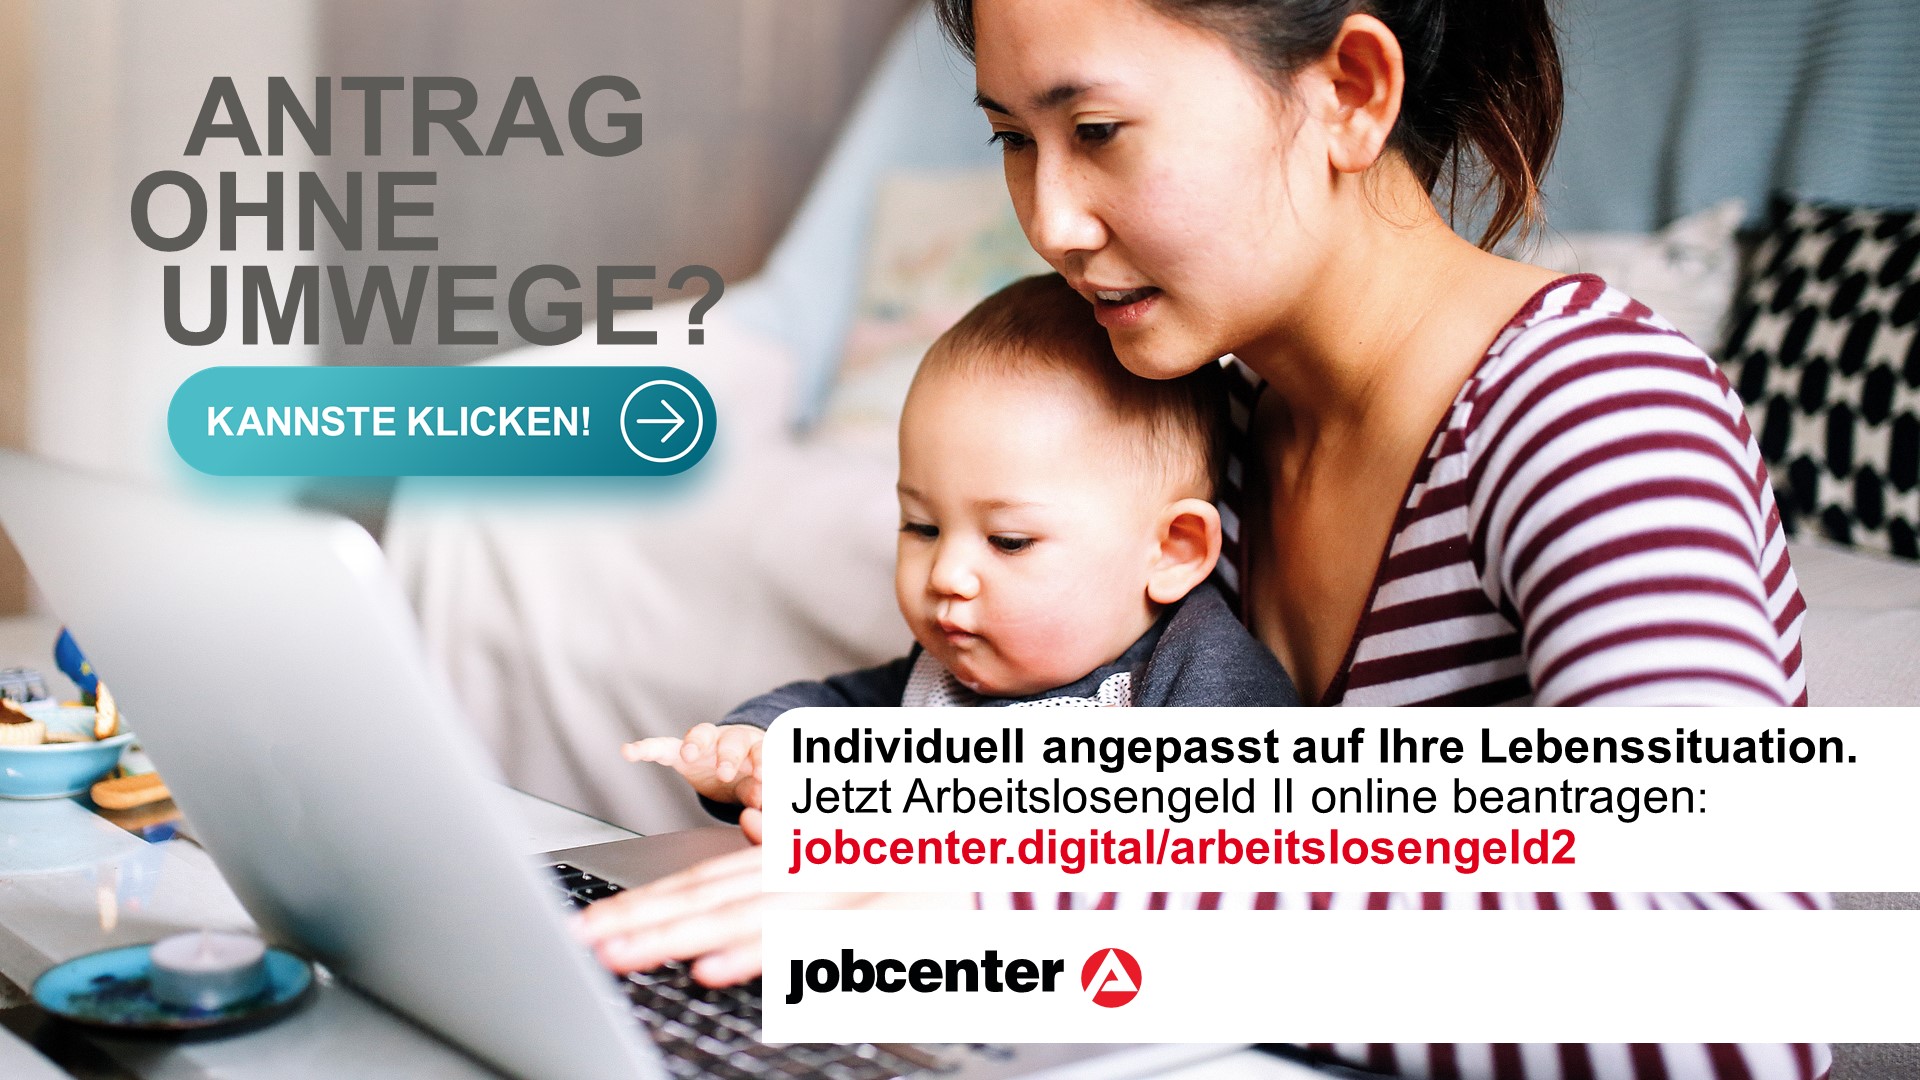 Antragstellung auf Arbeitslosengeld II jetzt auch online möglich!